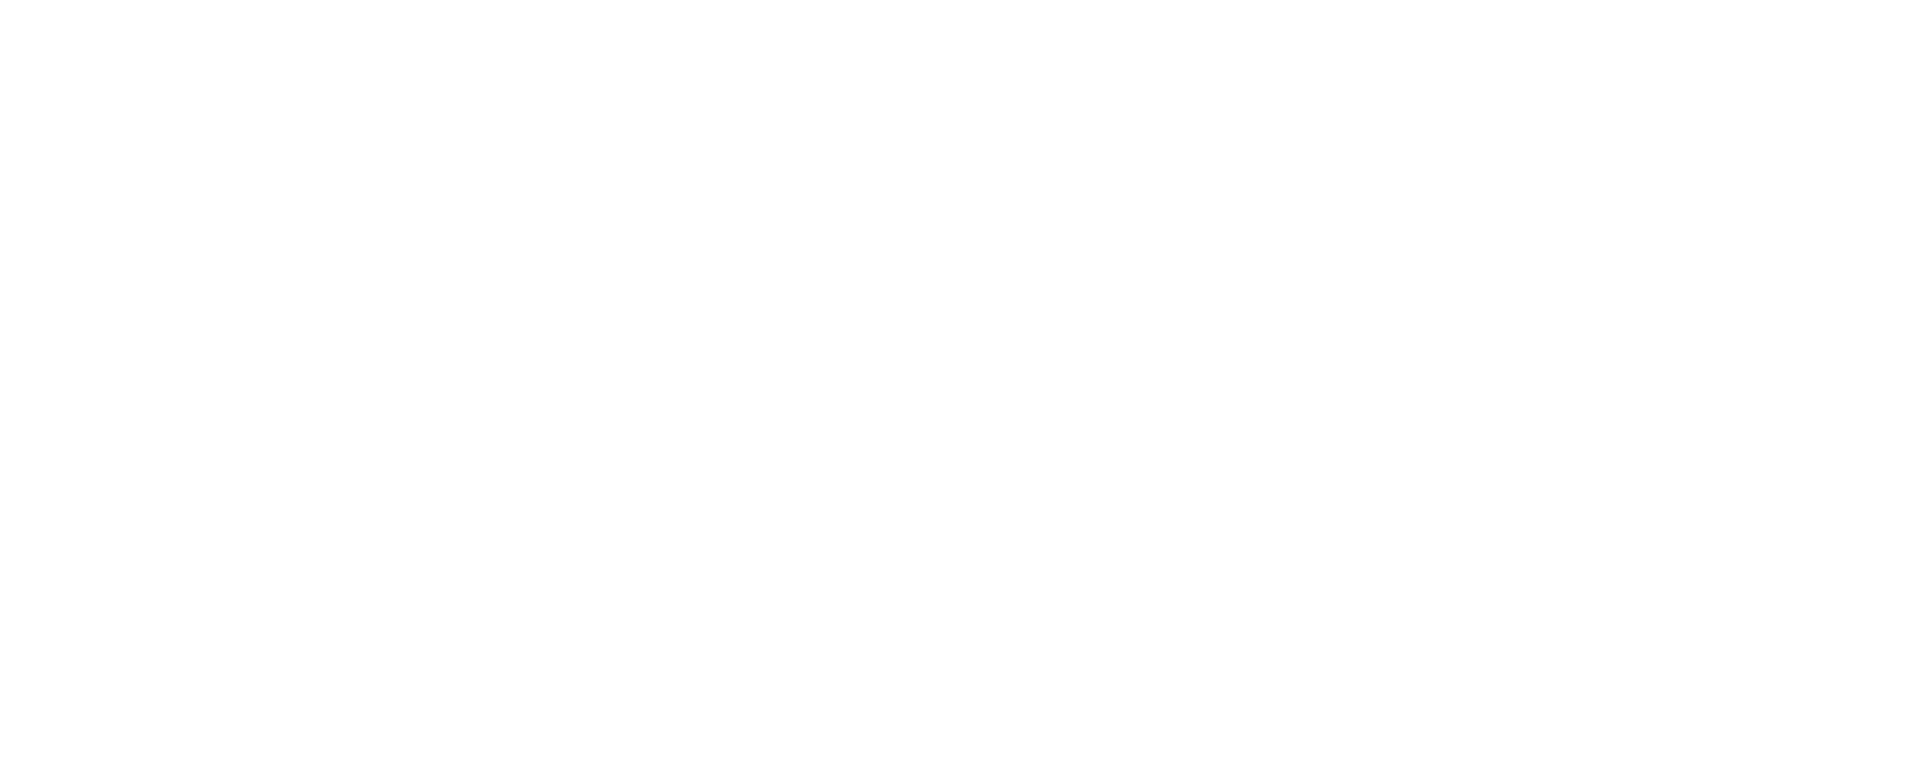 Hypi Logo